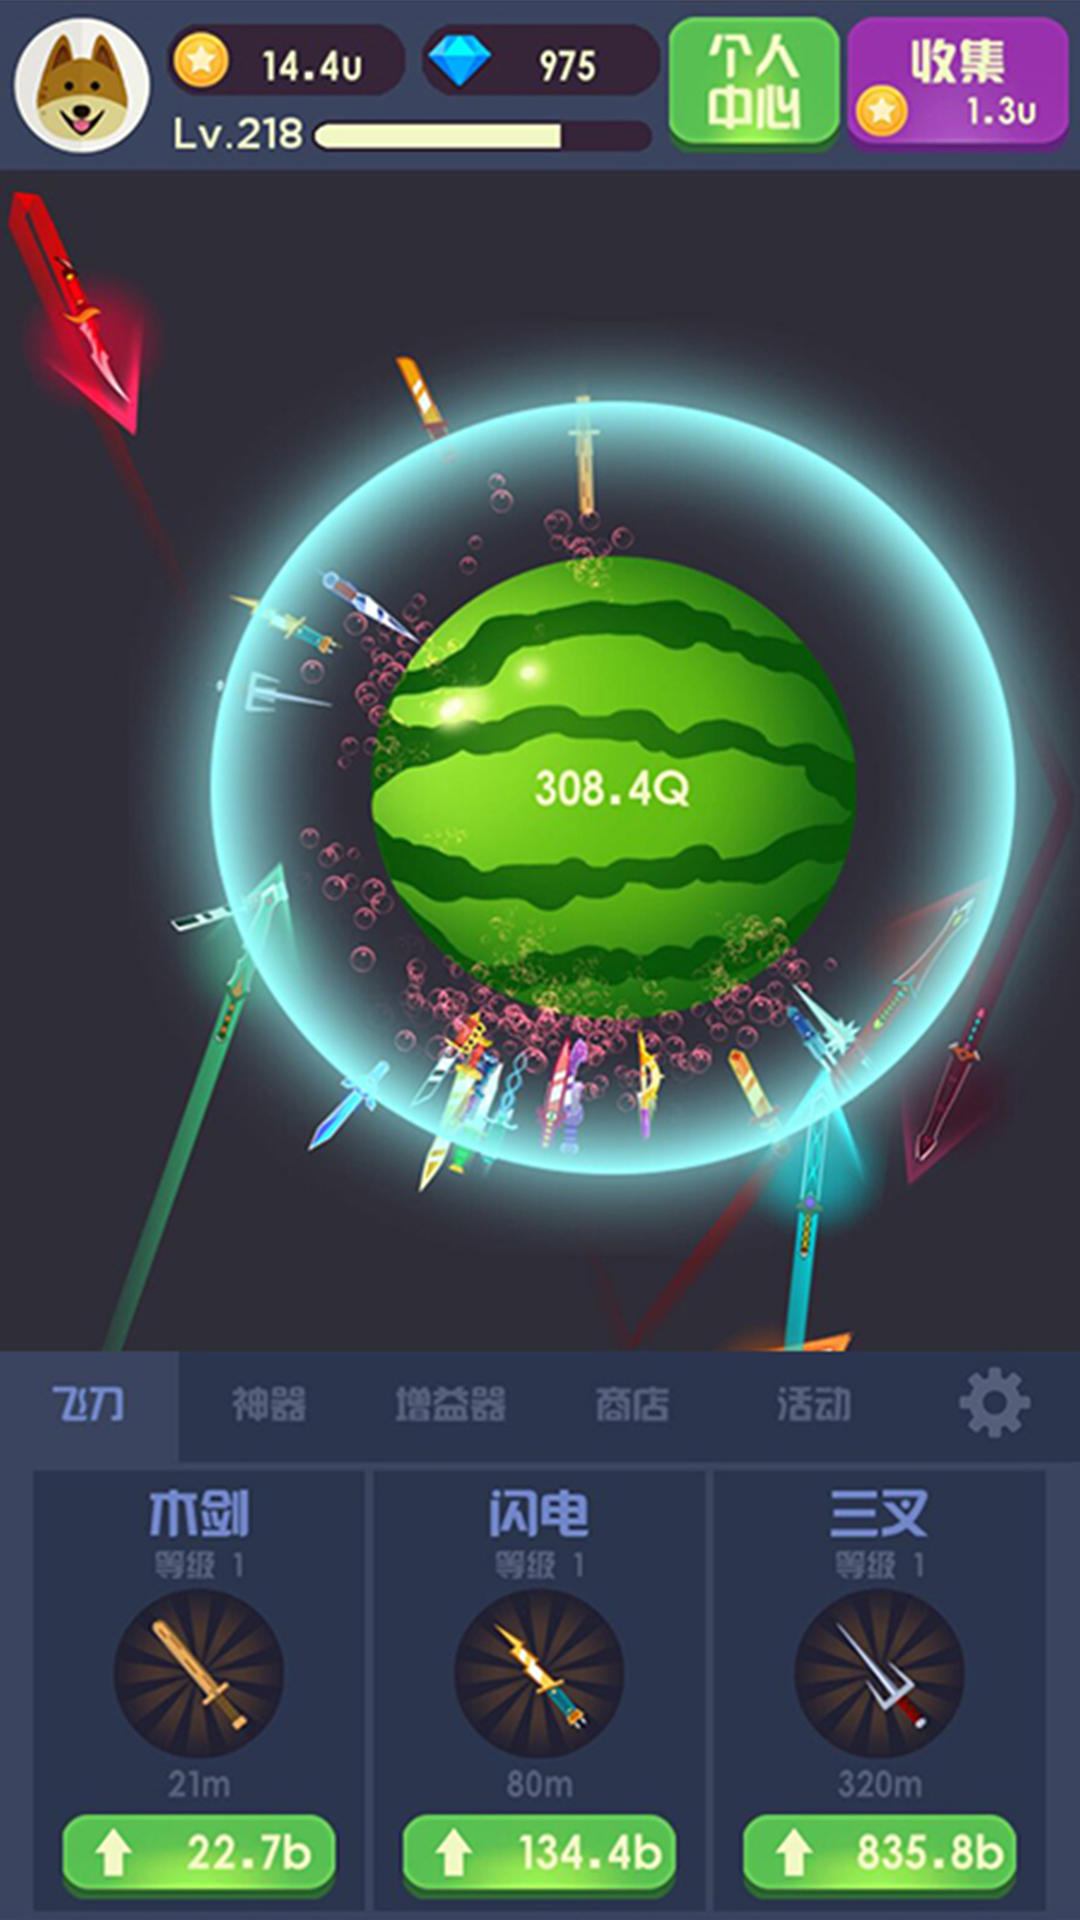 Screenshot 1 of Maestro nel lancio della frutta 1.0.0